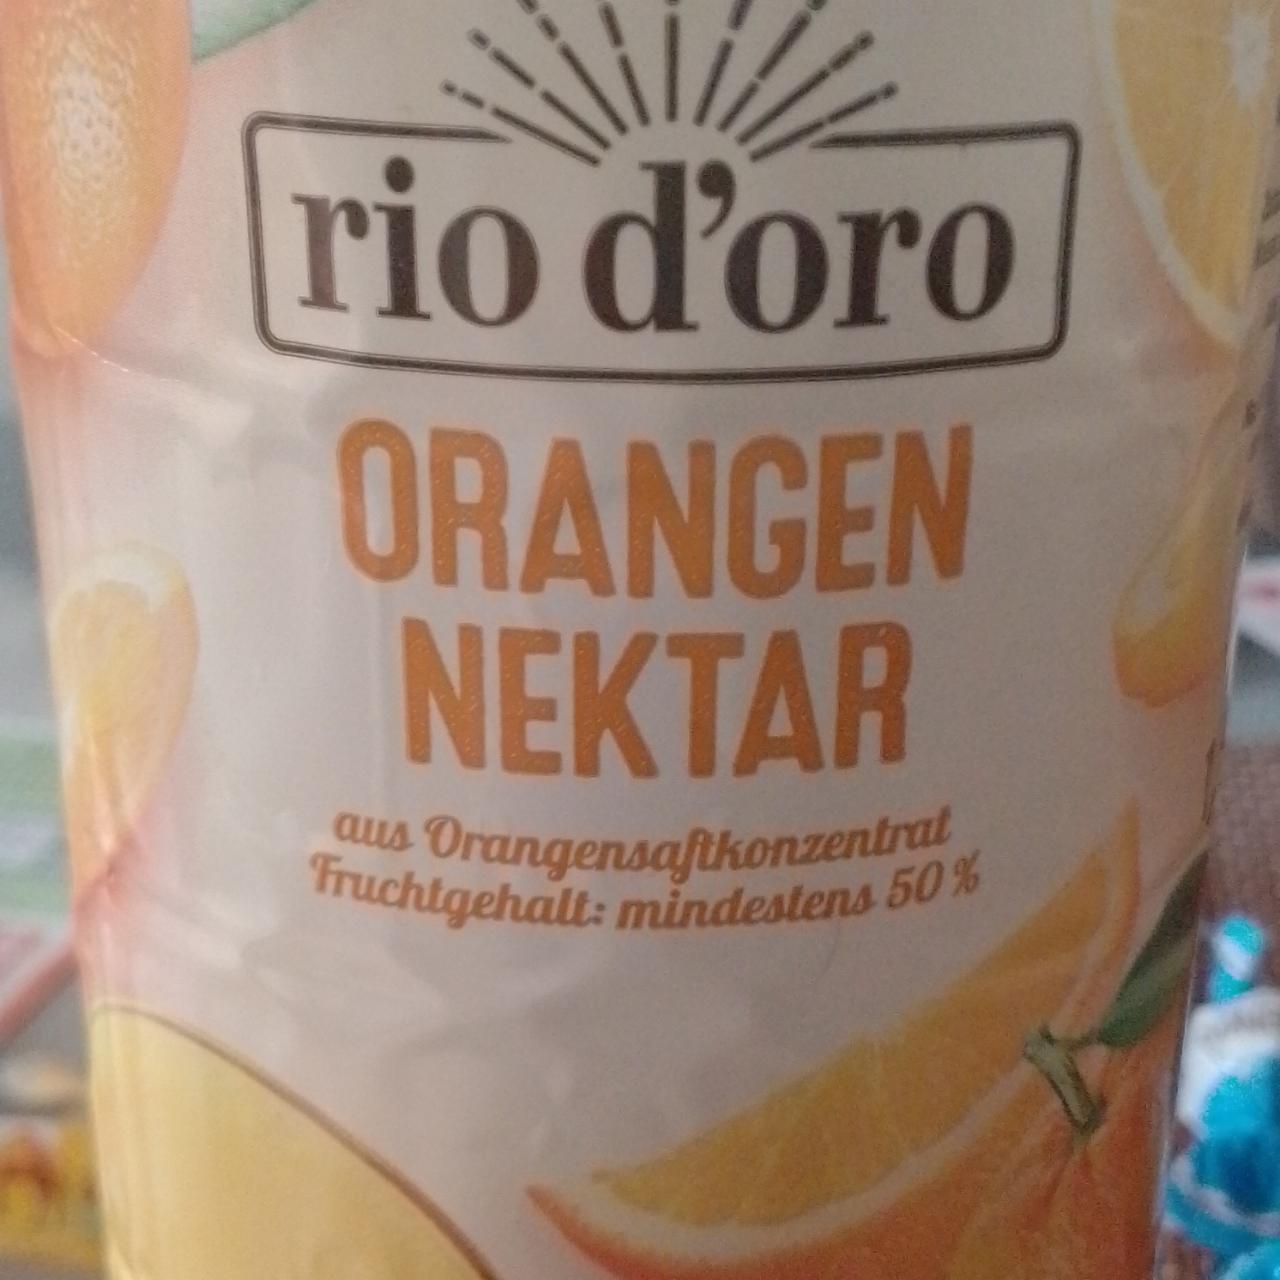 Фото - апельсиновый сок Rio D'oro